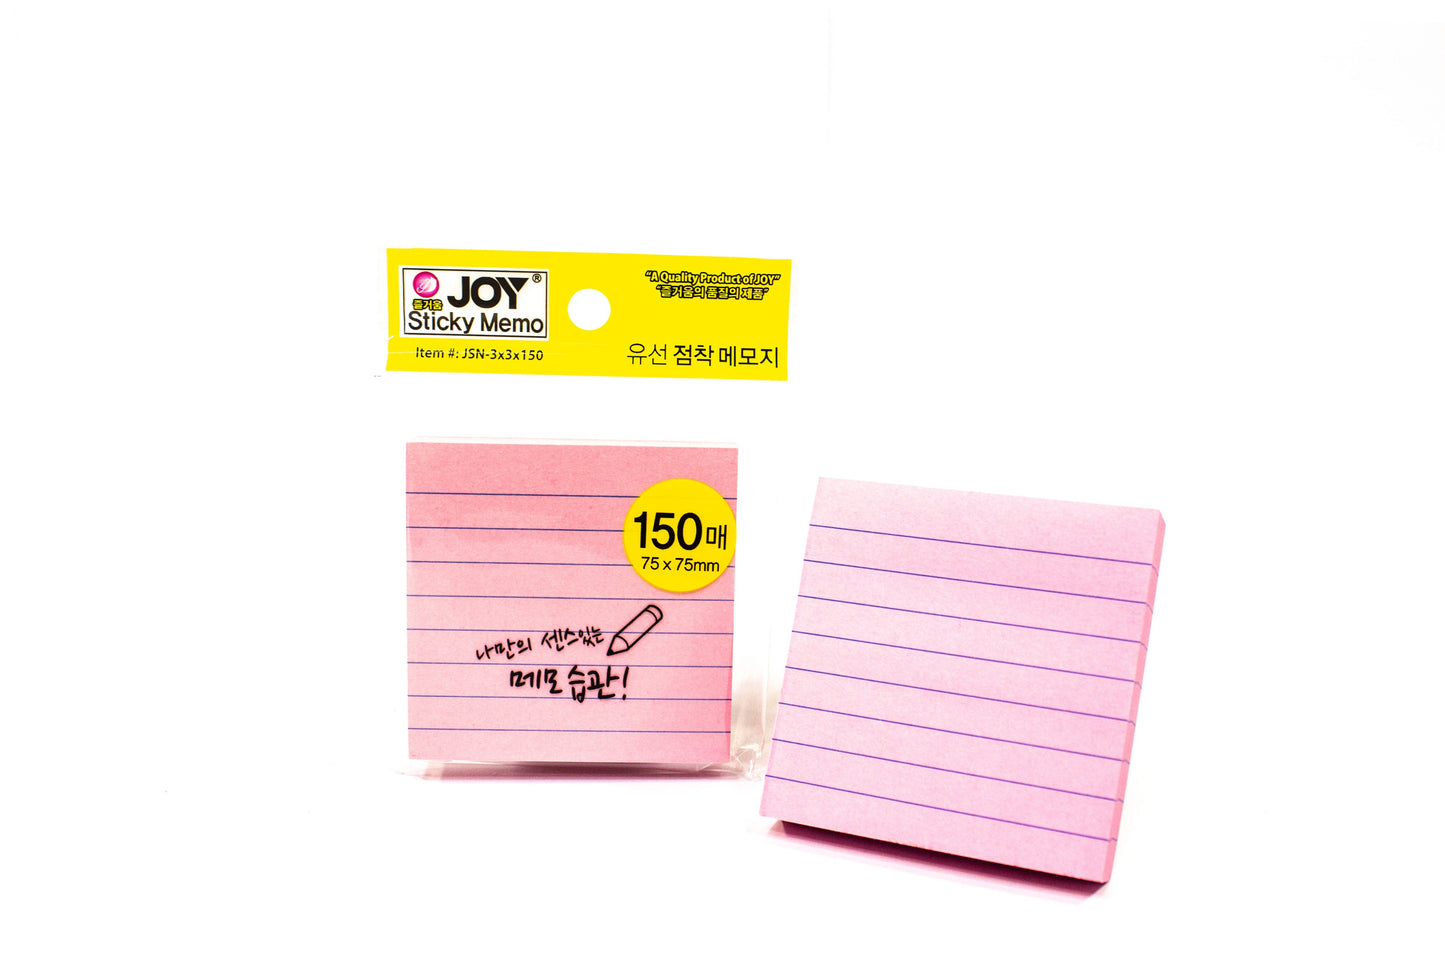 Joy Sticky Notes JSN-3x3x150 12Pad (Asstd. Color)